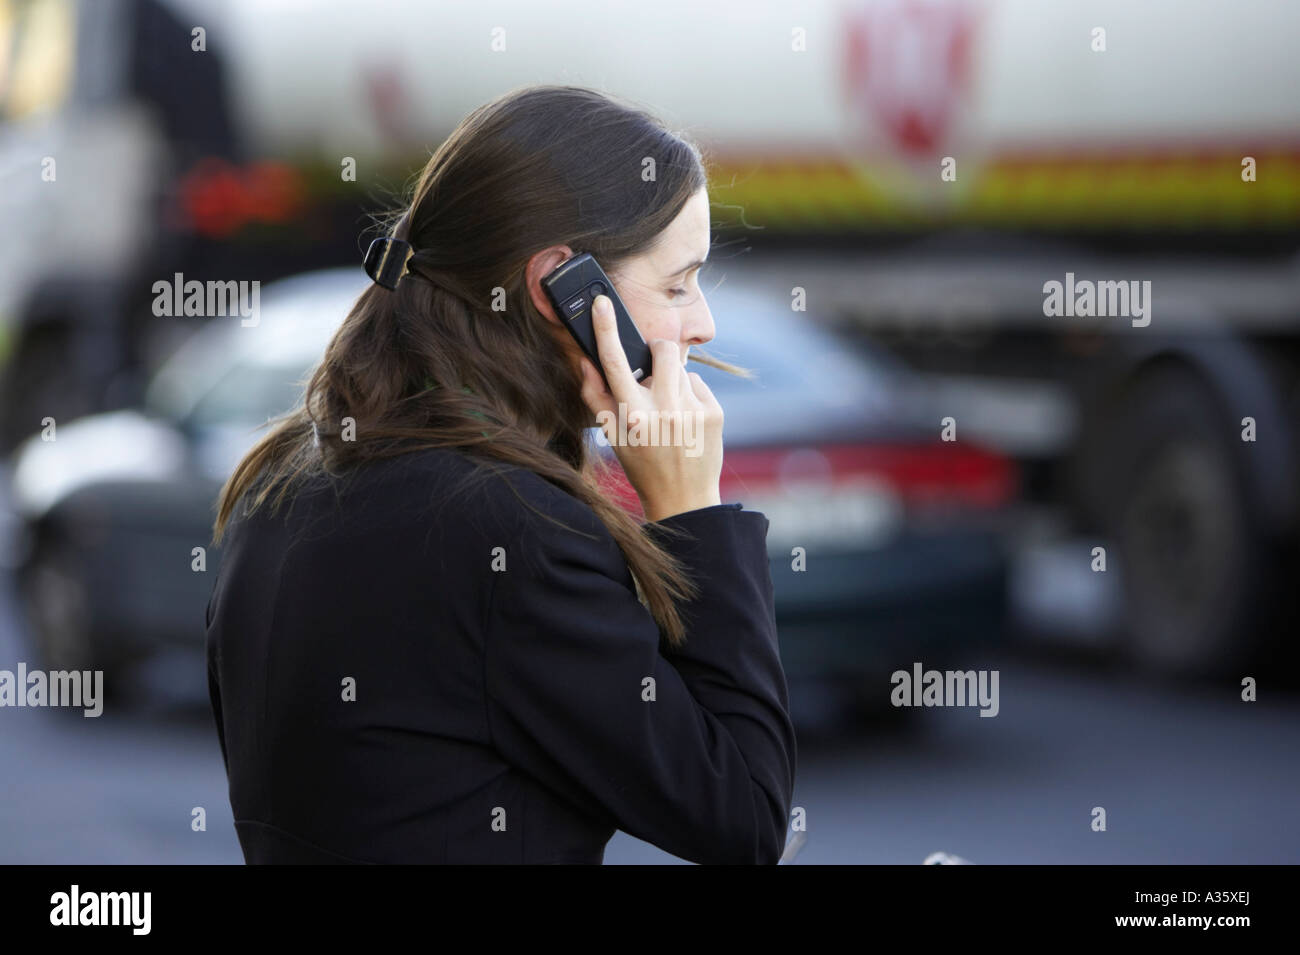 langen dunklen Haaren Irin mit dem Haar Clip tragen schwarze Jackett auf einem Nokia-Handy vor Verkehr in dublin Stockfoto